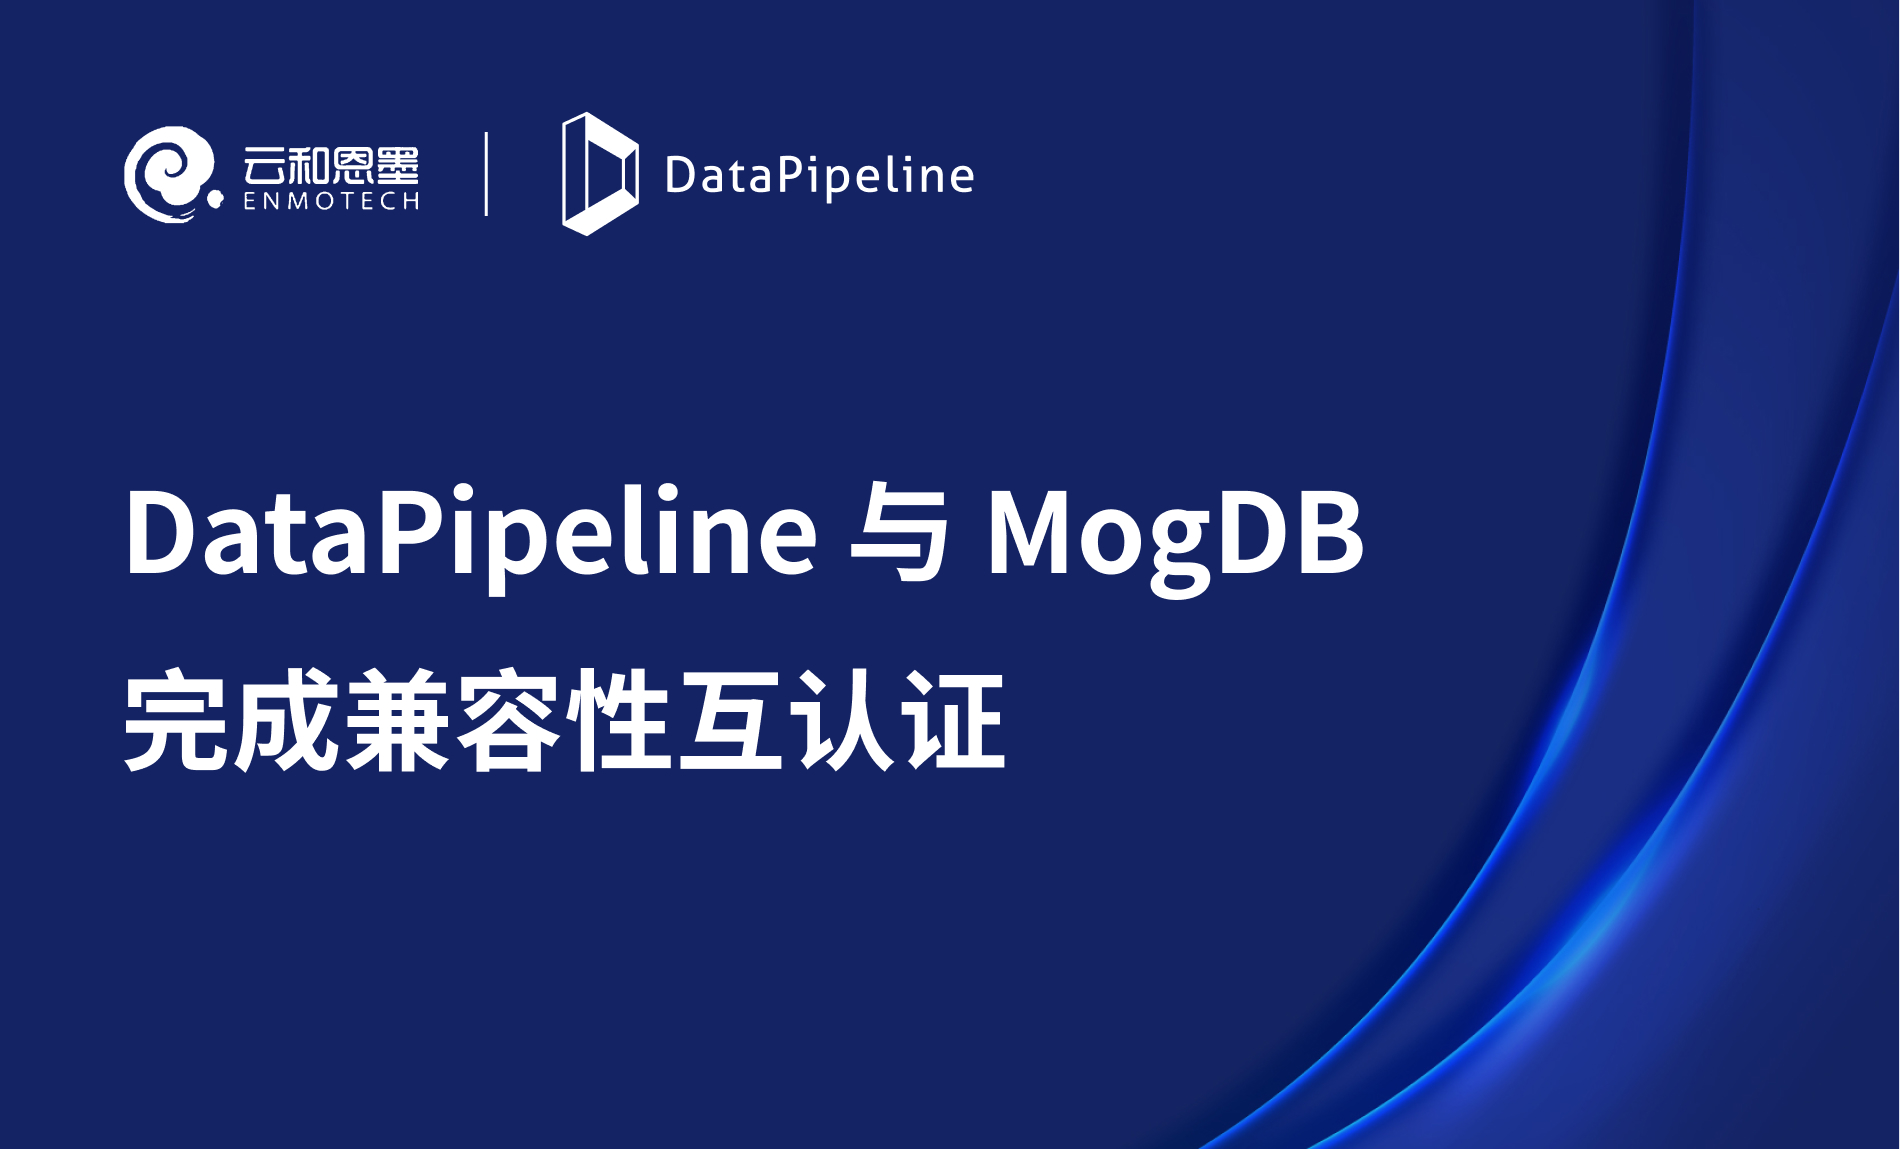 DataPipeline 与云和恩墨 MogDB 完成产品兼容性互认证，共建数据管理新生态